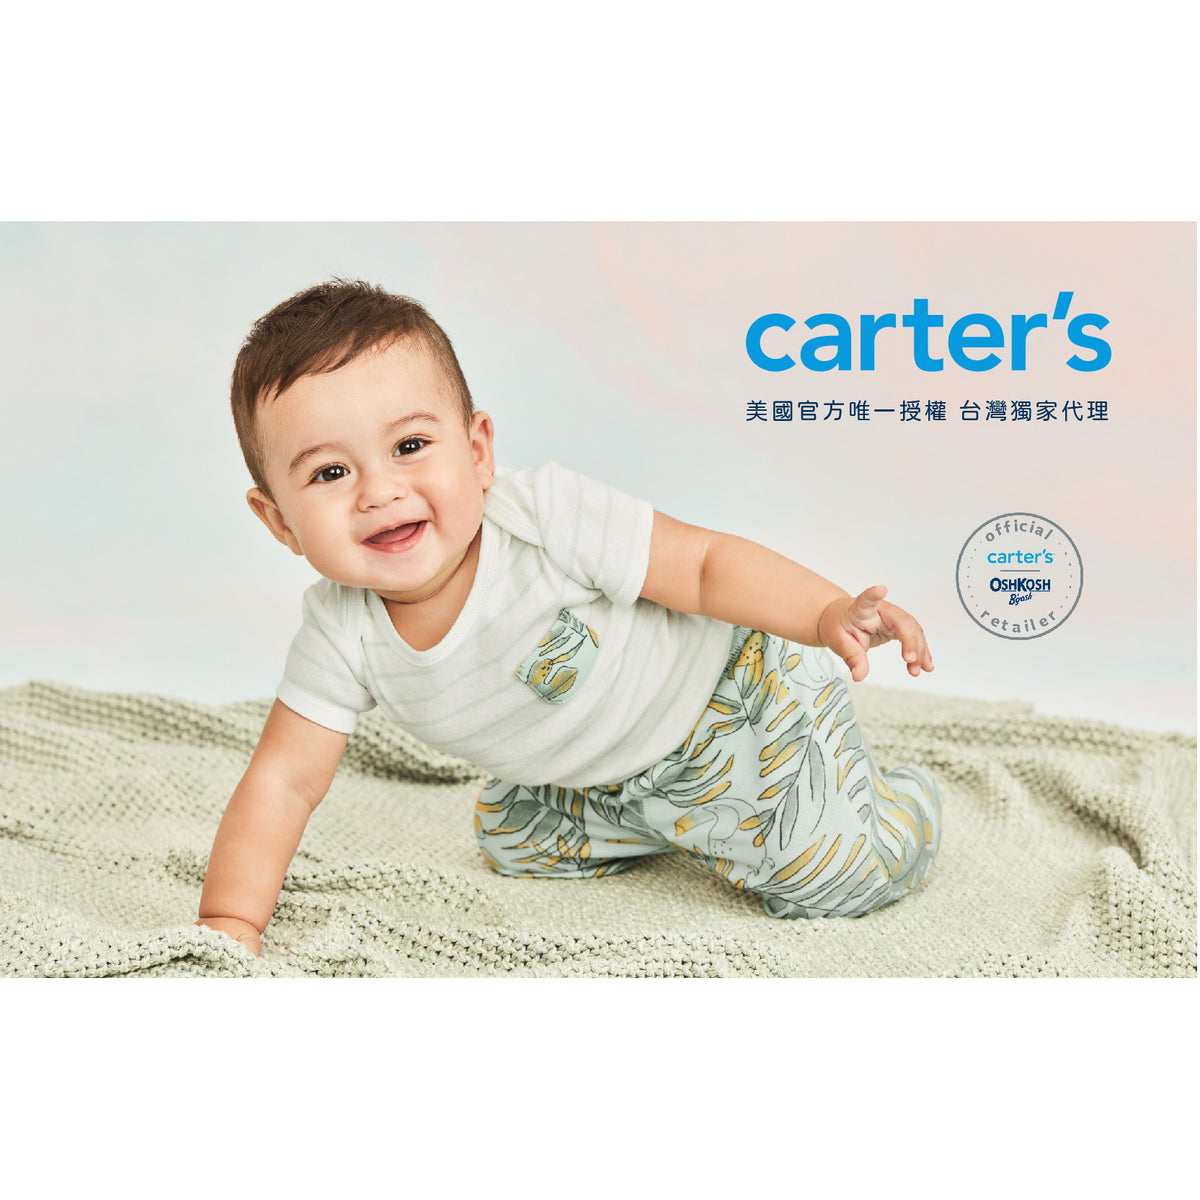 Carter's Little Sailor 2-piece set (6M-24M)